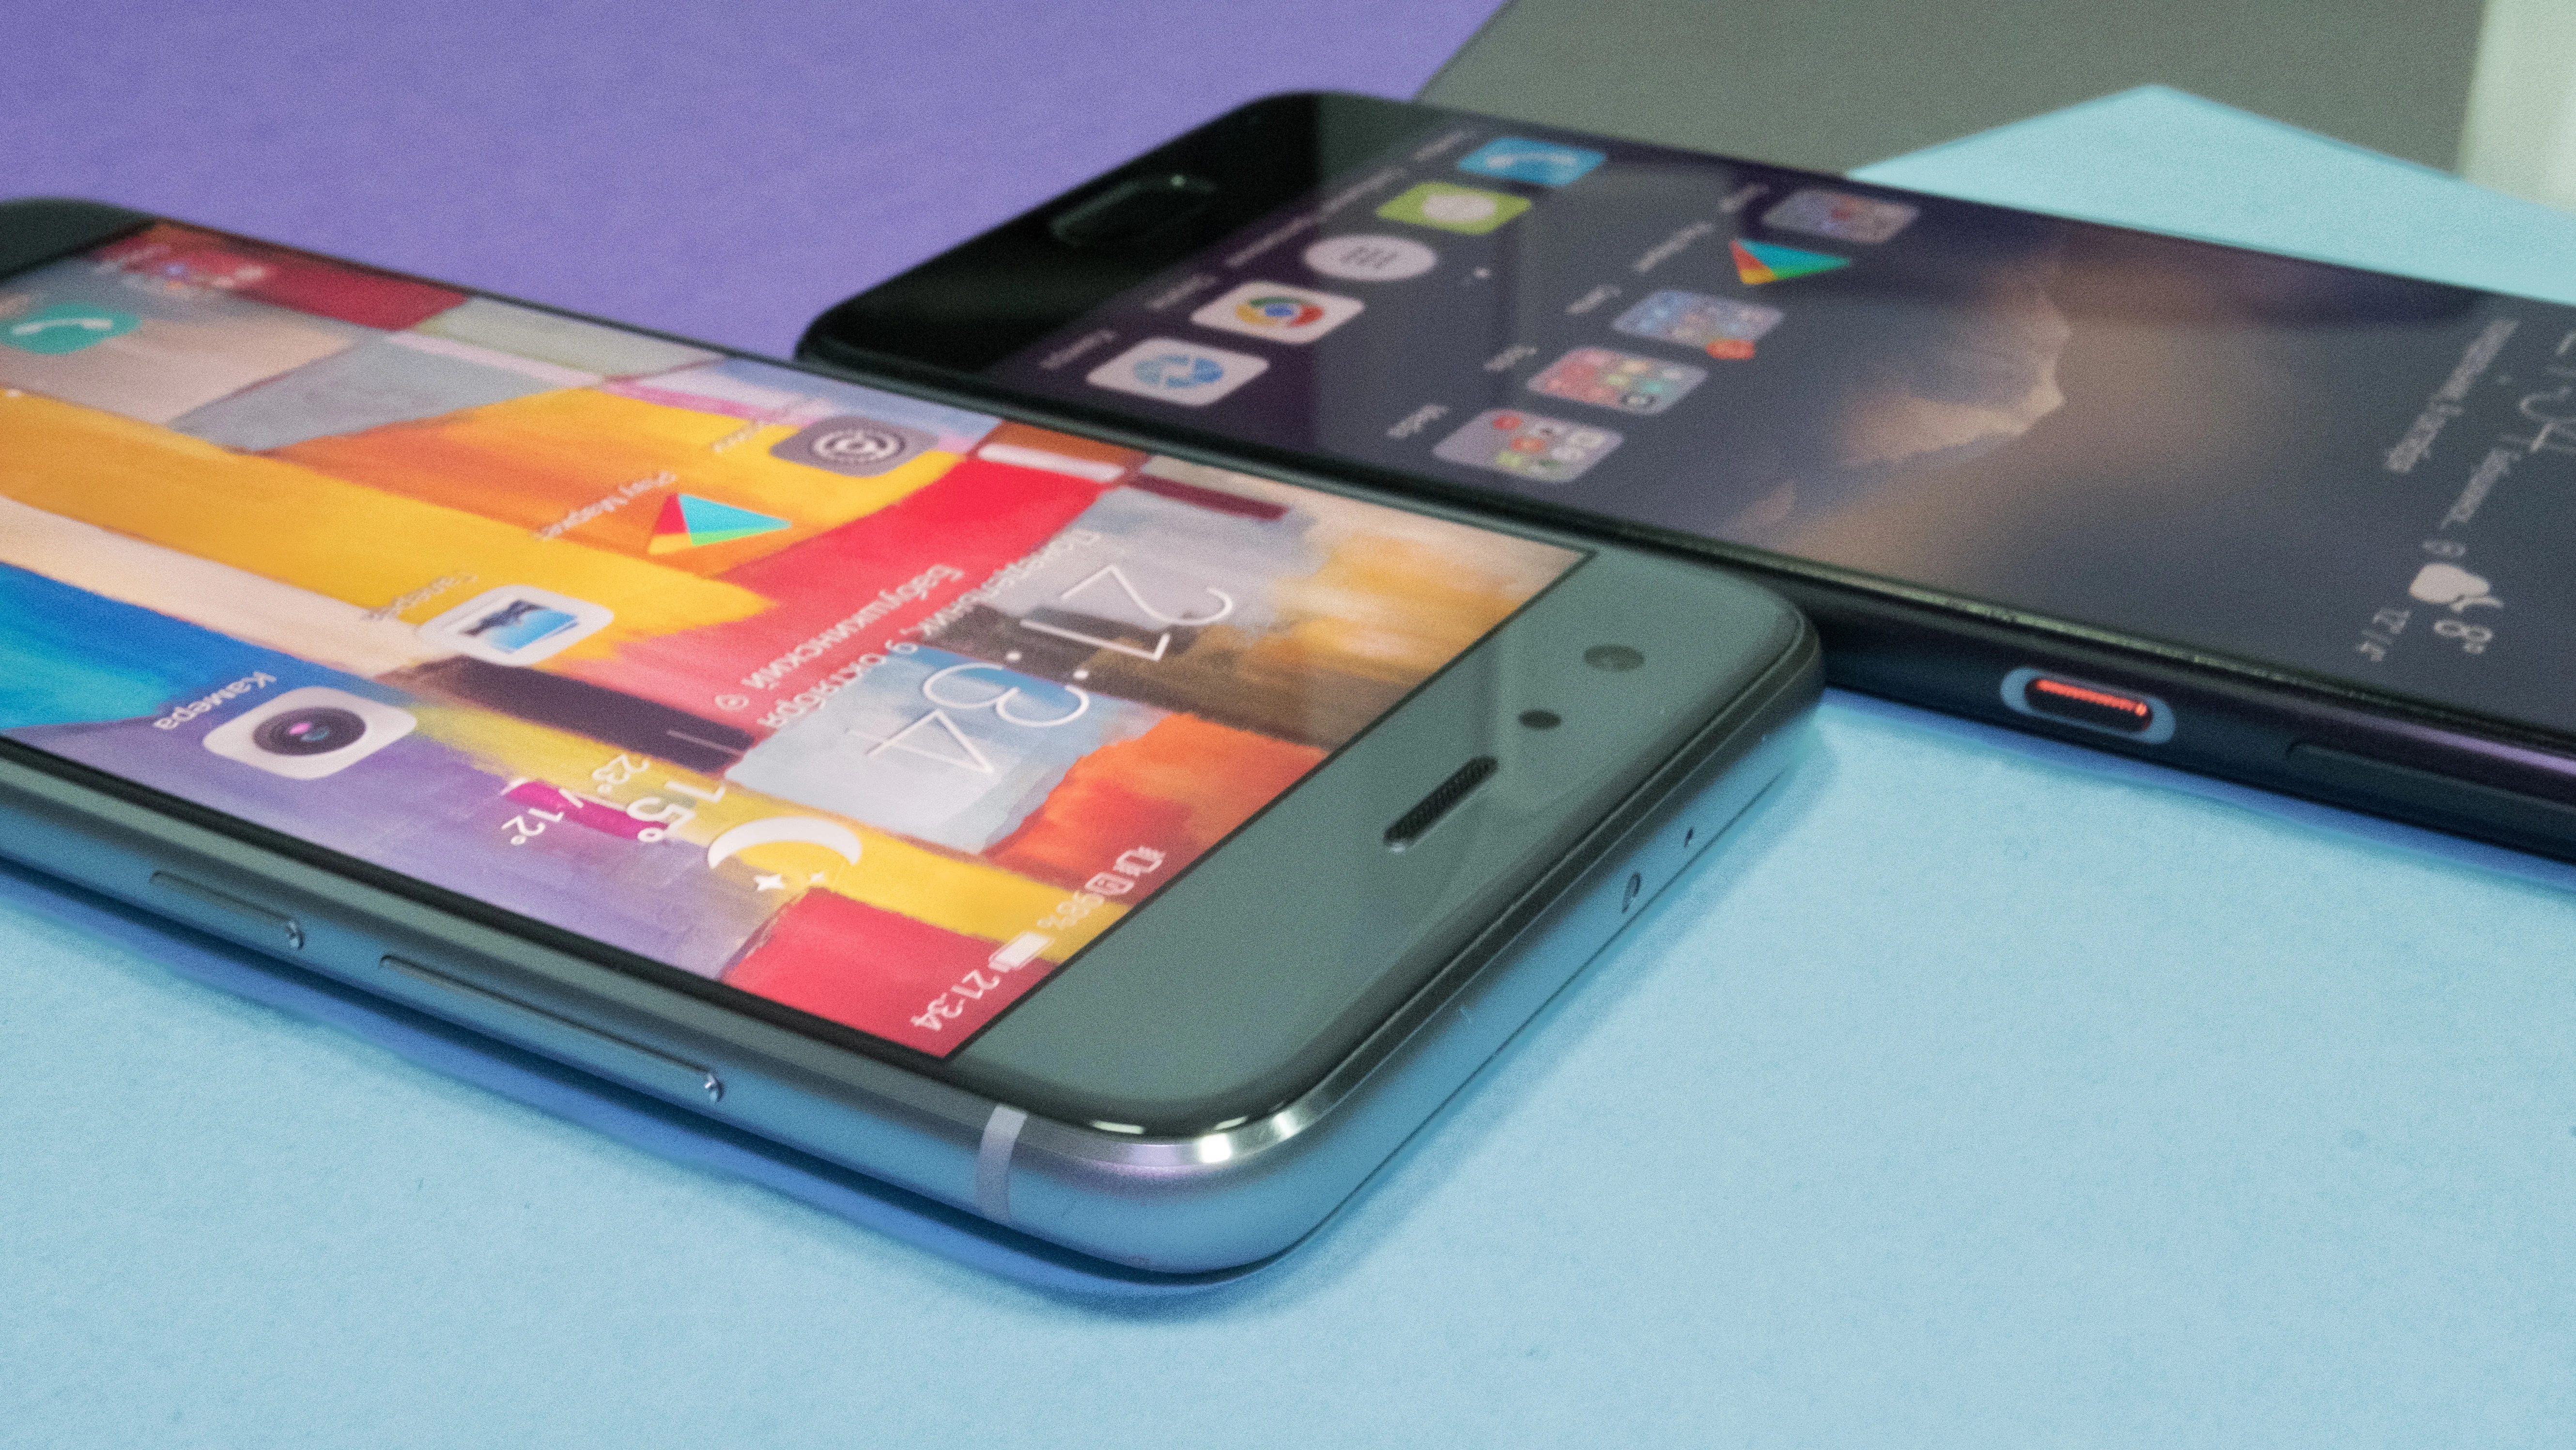 Обзор Huawei P10 Plus — достойный флагман, который зачем-то похож на iPhone - фото 6